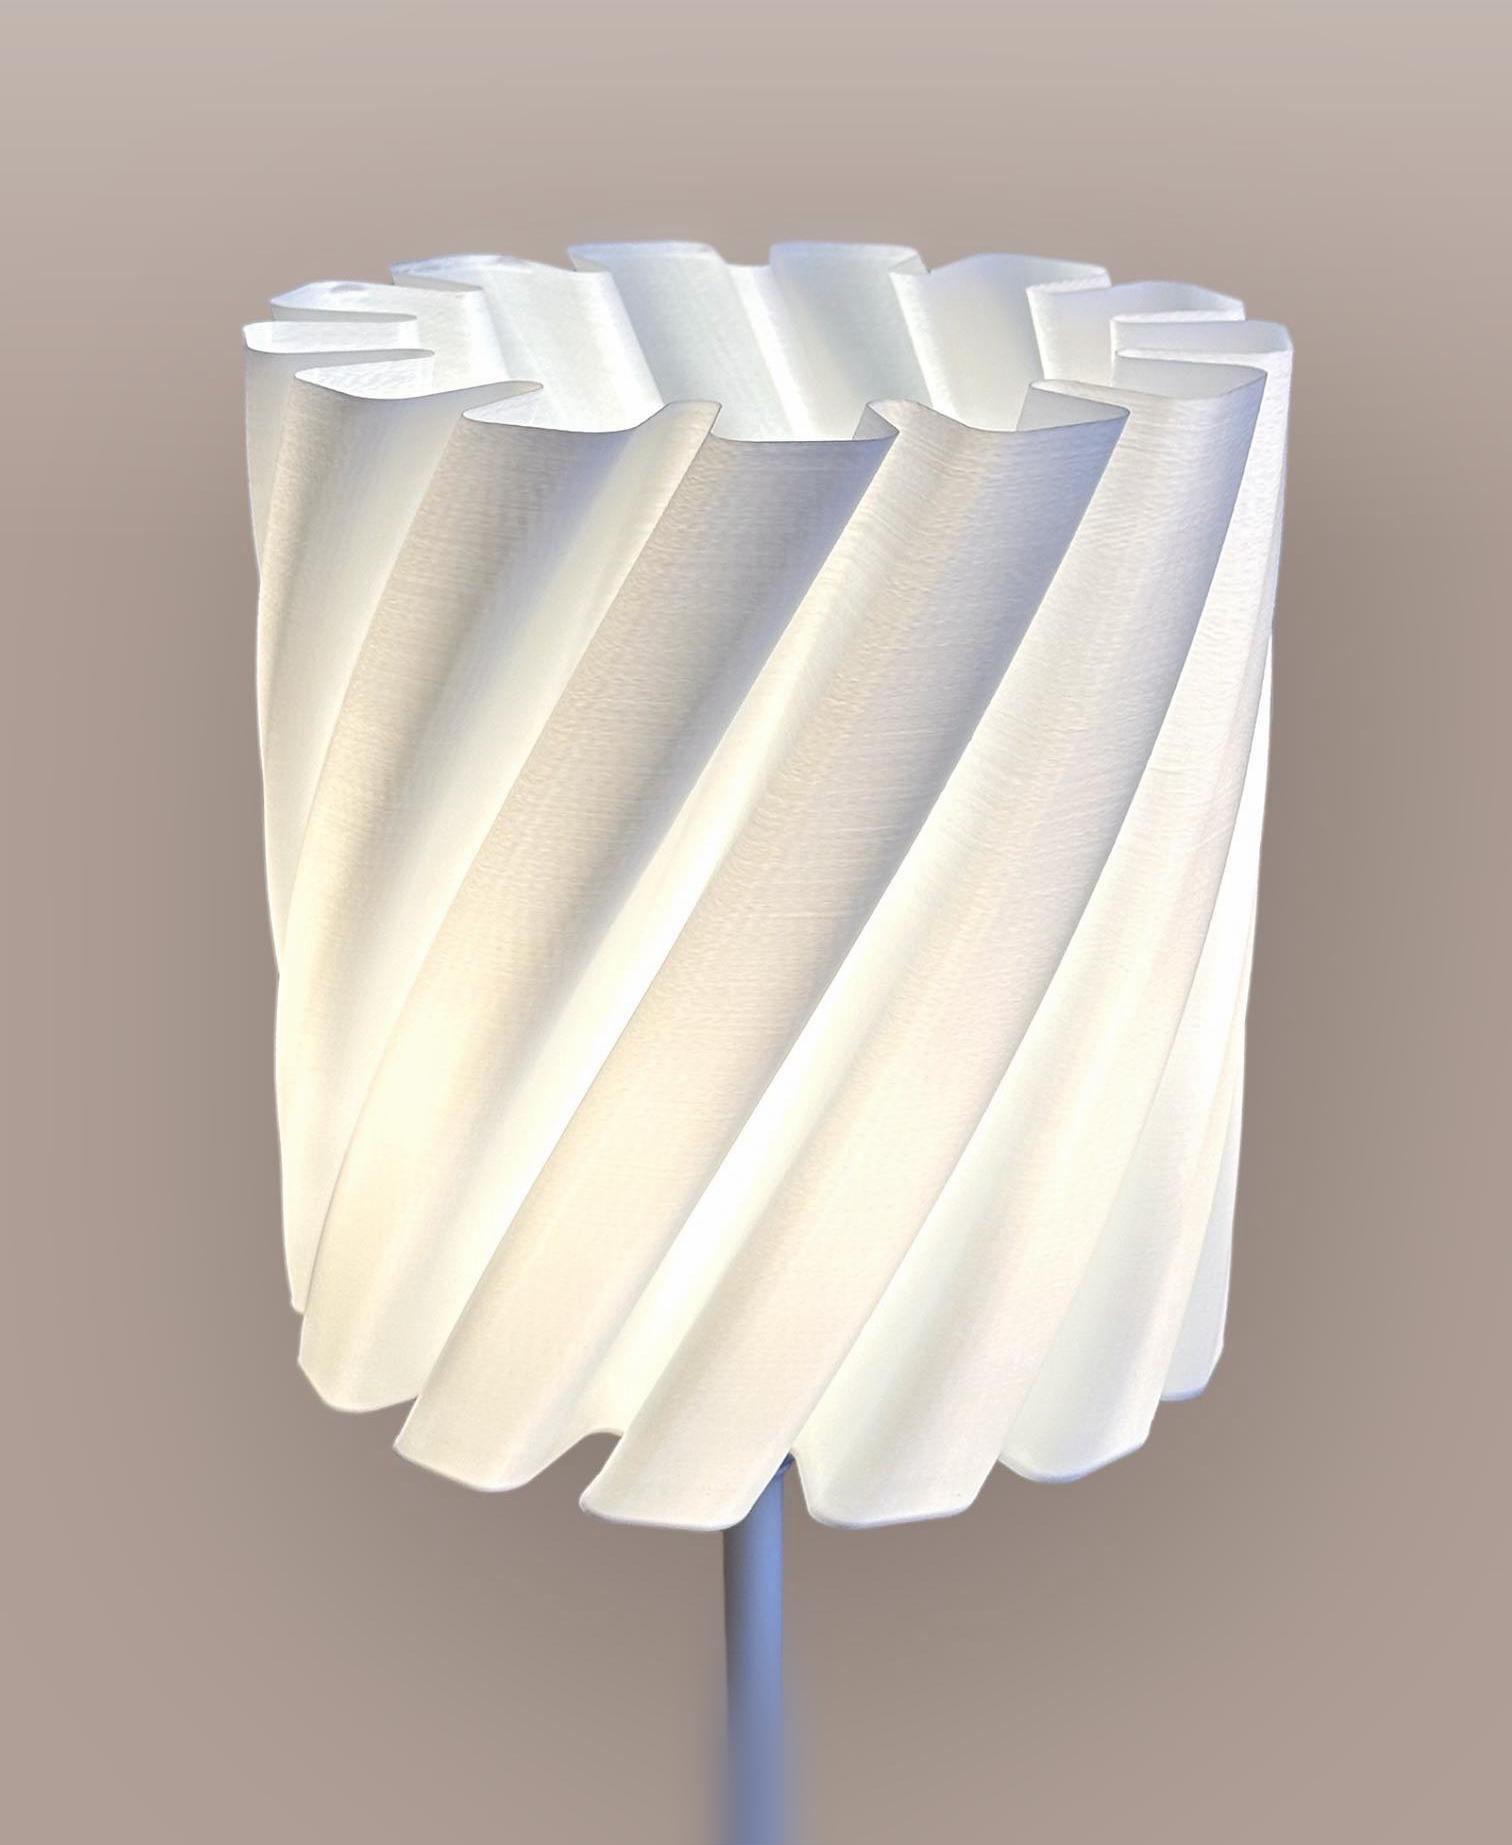 Gear lampshade 3d model